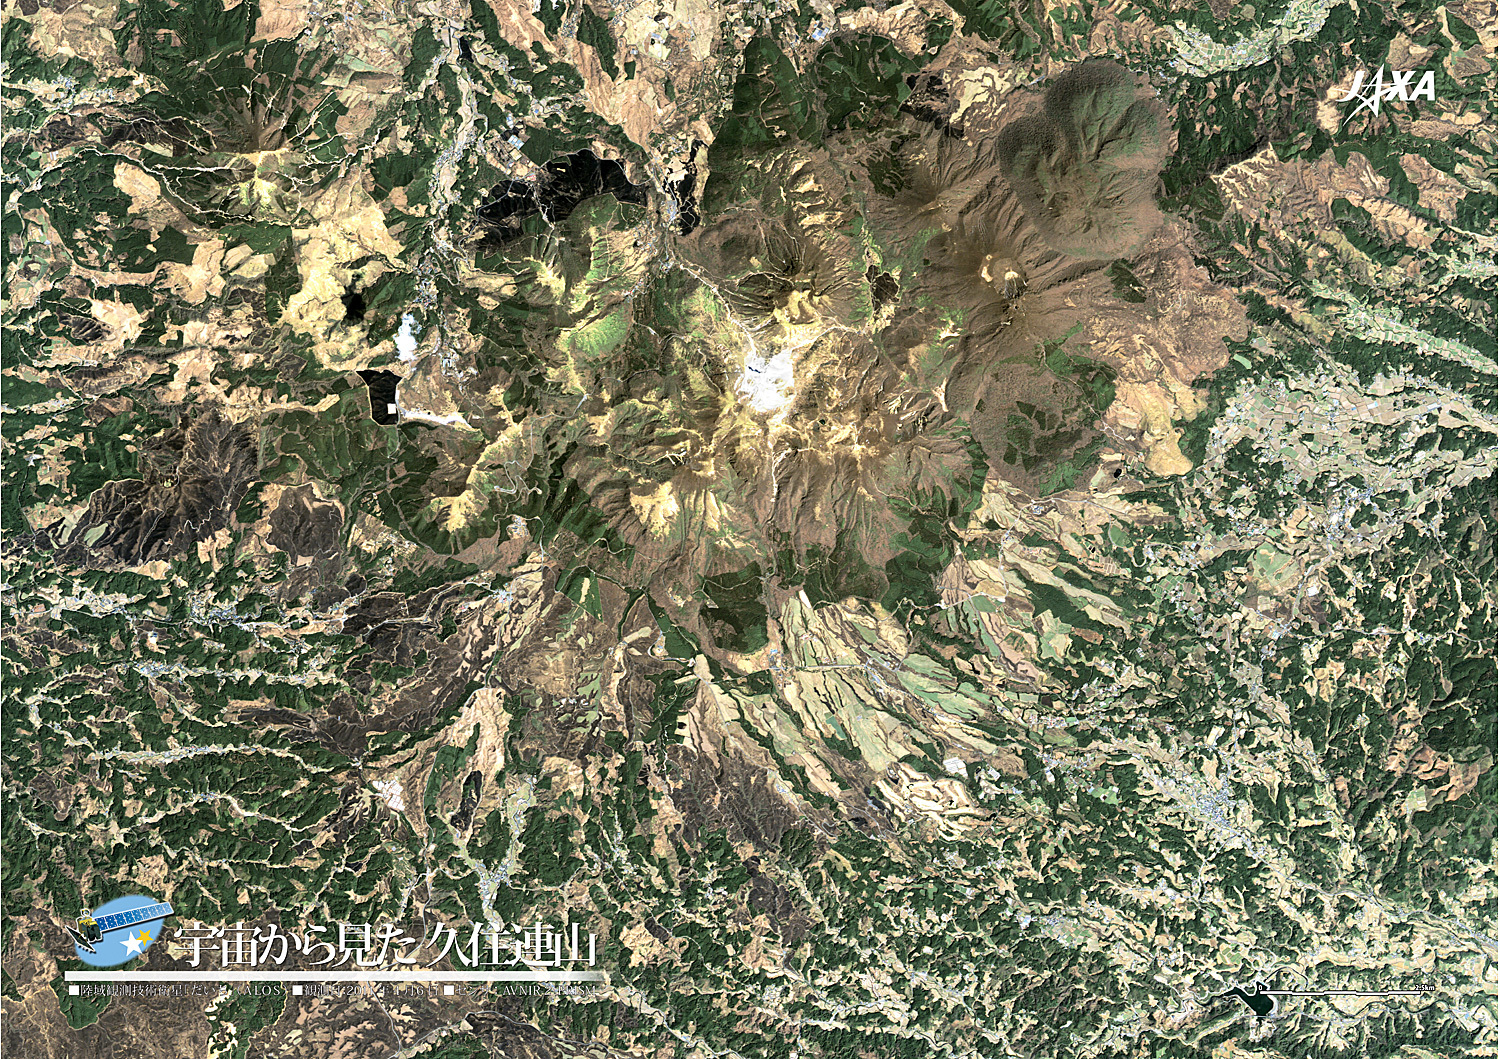 だいちから見た日本の都市 久住連山:衛星画像（ポスター仕上げ）